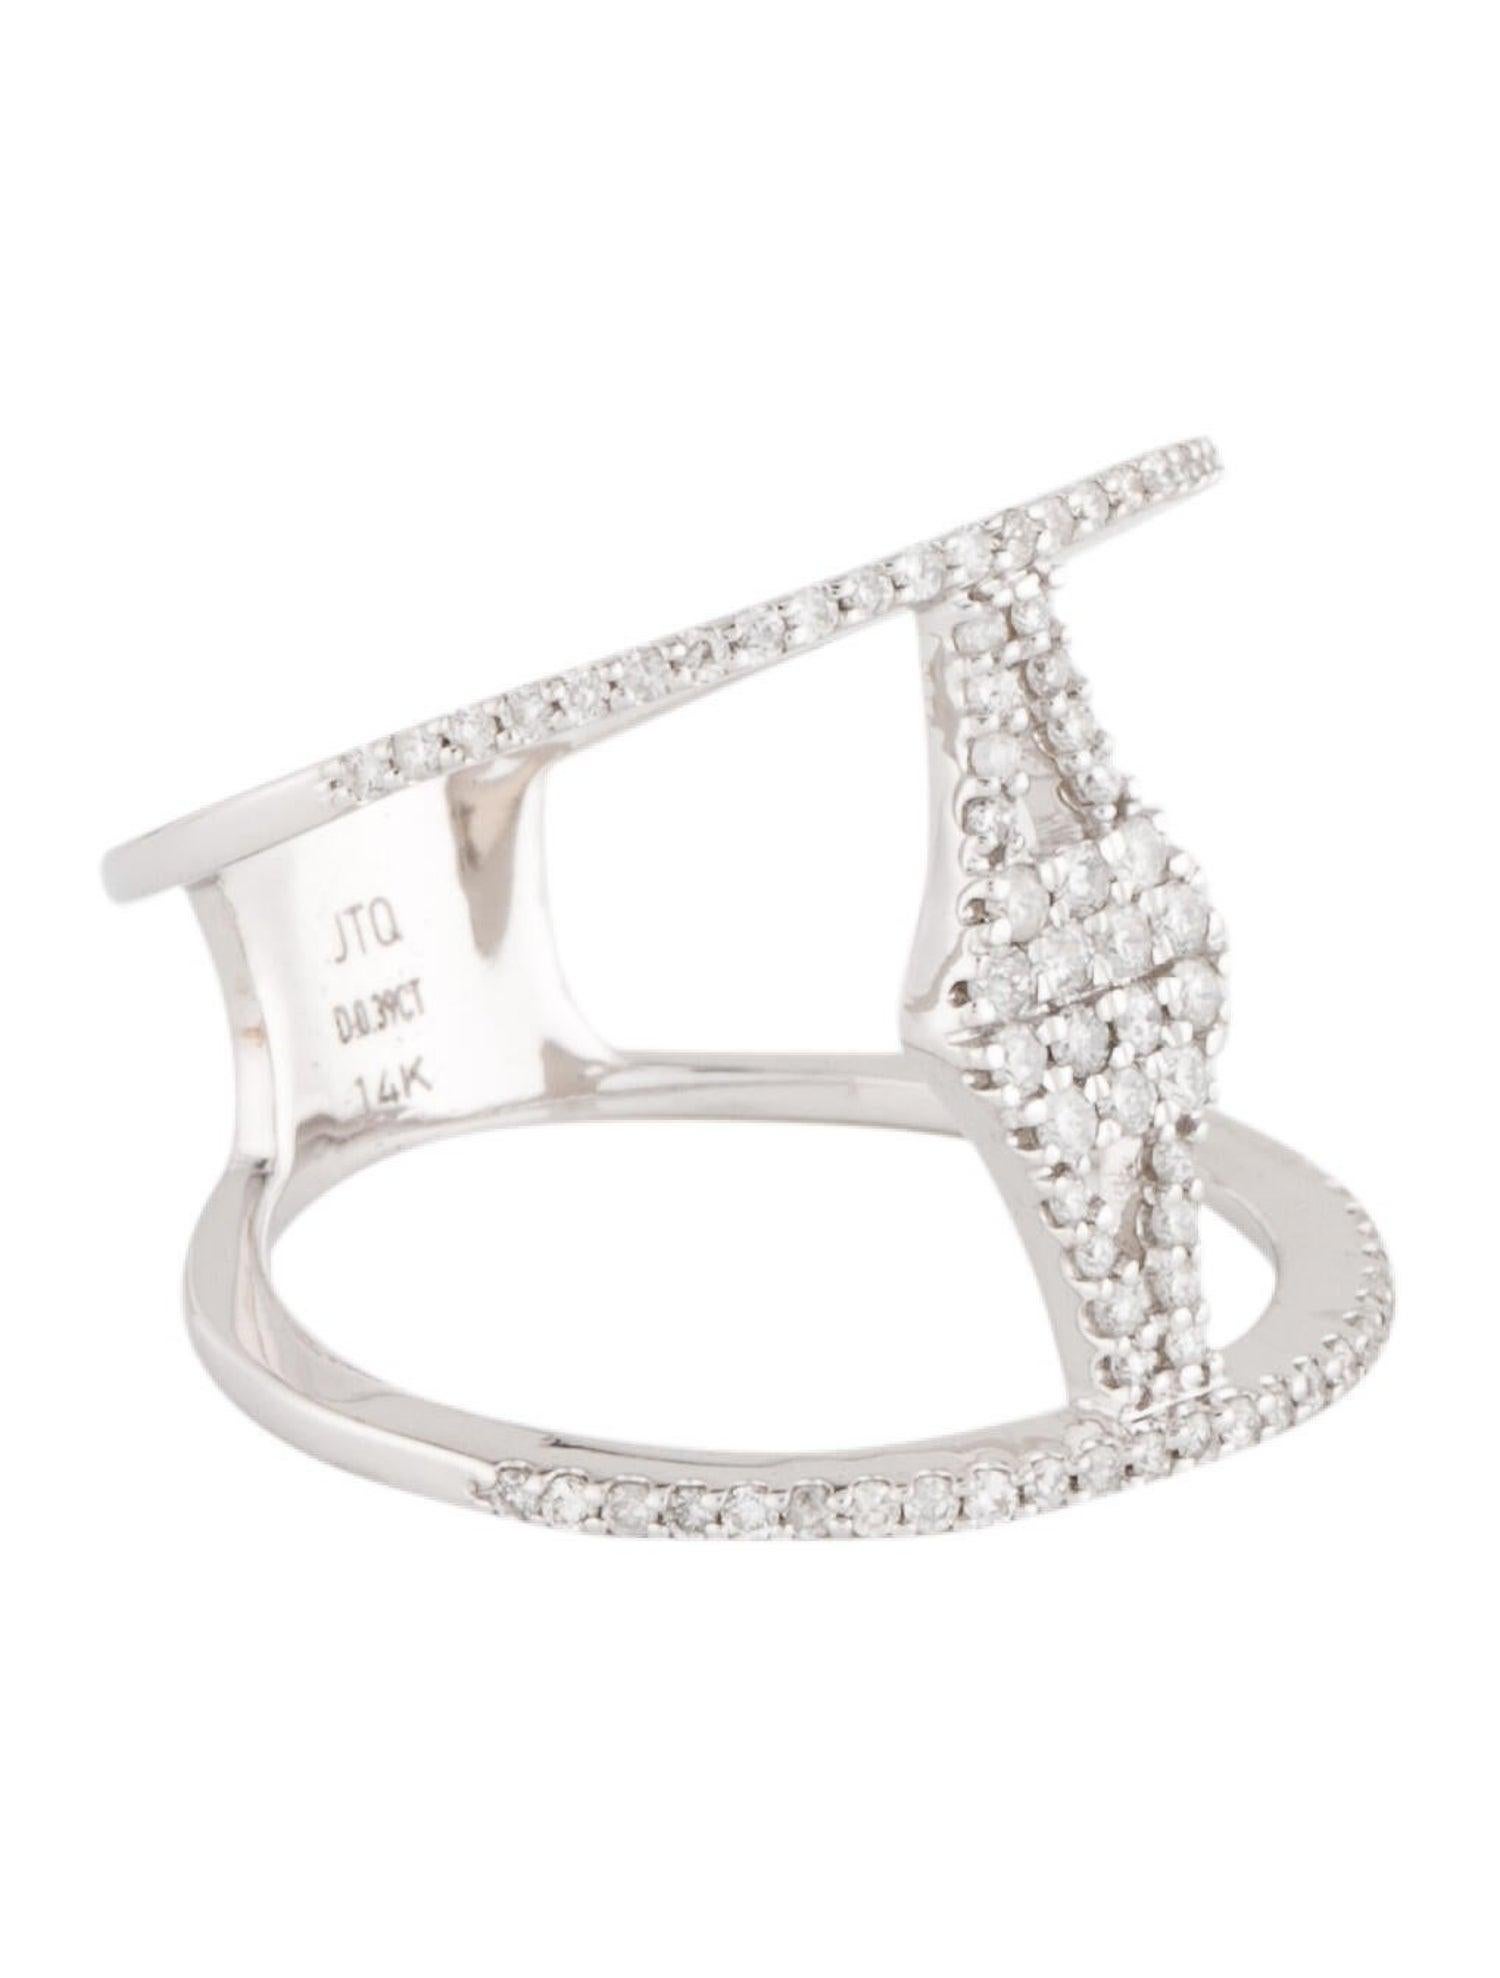 Erleben Sie die himmlische Schönheit des Winters mit unserem Snowflake Soirée Diamond Ring, einer faszinierenden Kreation, die die zarte Komplexität von Schneeflocken in funkelnden weißen Diamanten einfängt. Dieses exquisite, mit viel Liebe zum